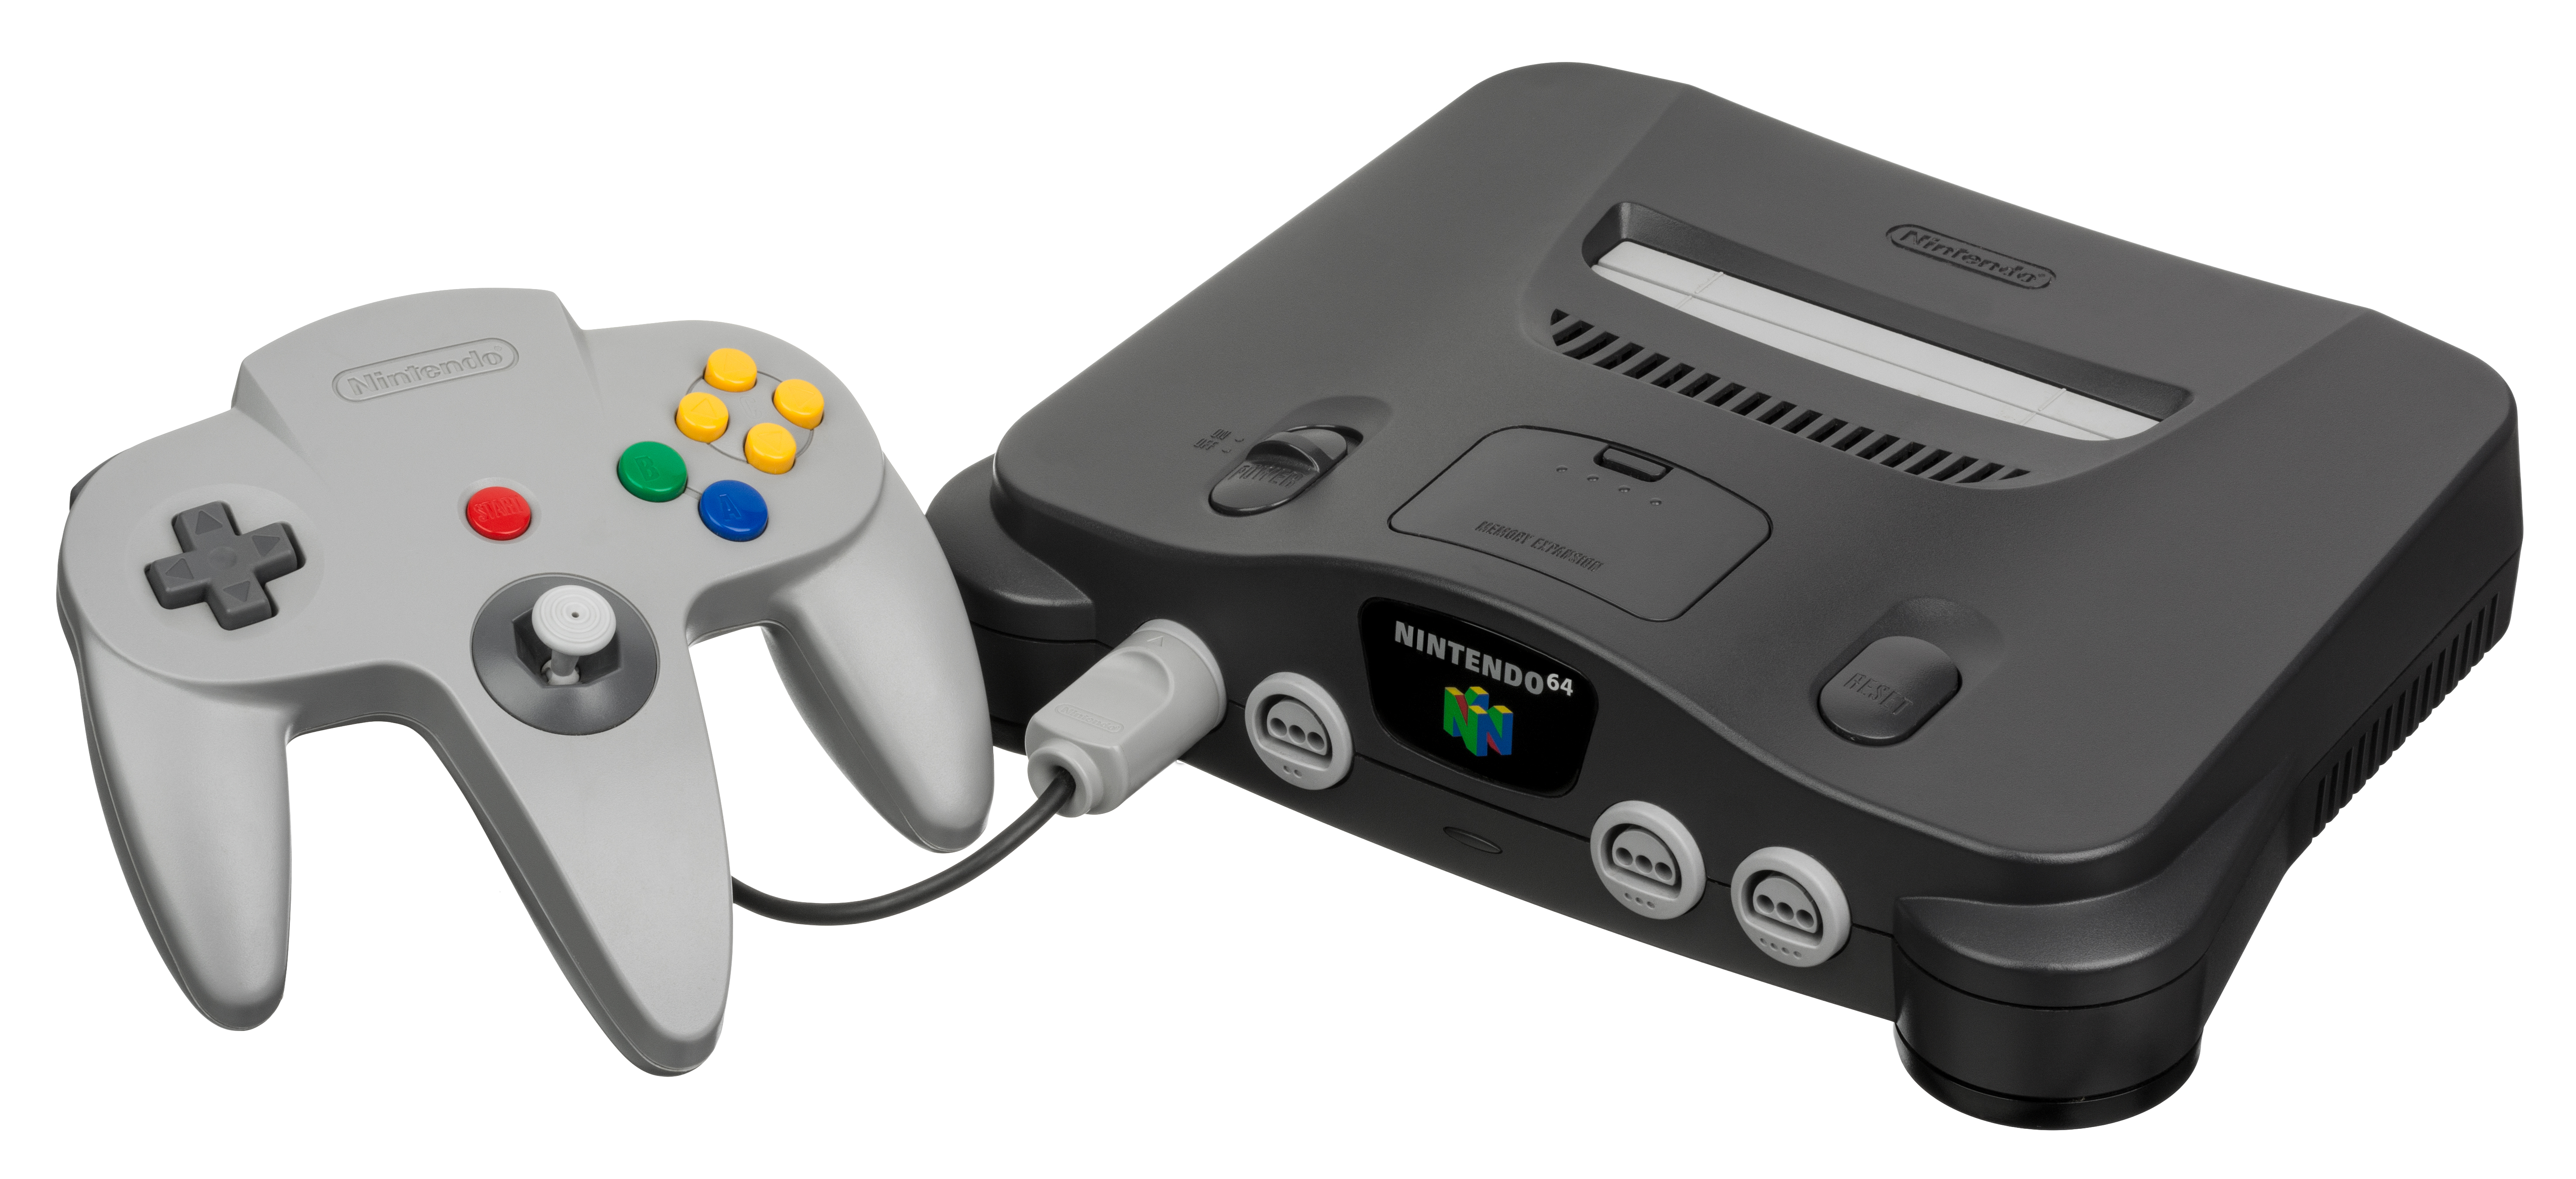 Nintendo 64 - Sega Retro